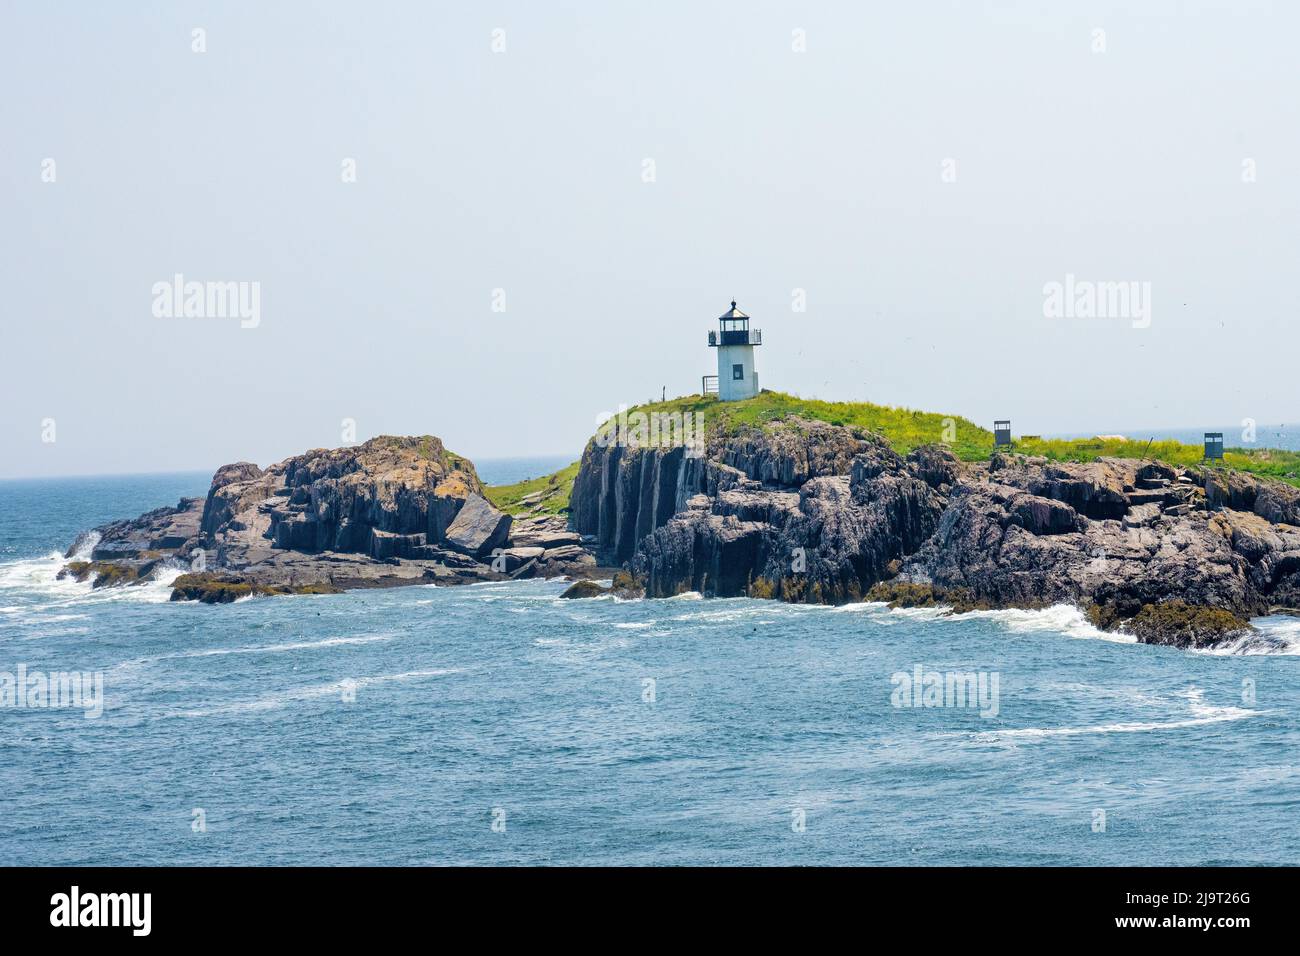 Pond Island Light est un phare situé à l'embouchure de la rivière Kennebec, dans le Maine. Construit en 1855. (Usage éditorial uniquement) Banque D'Images